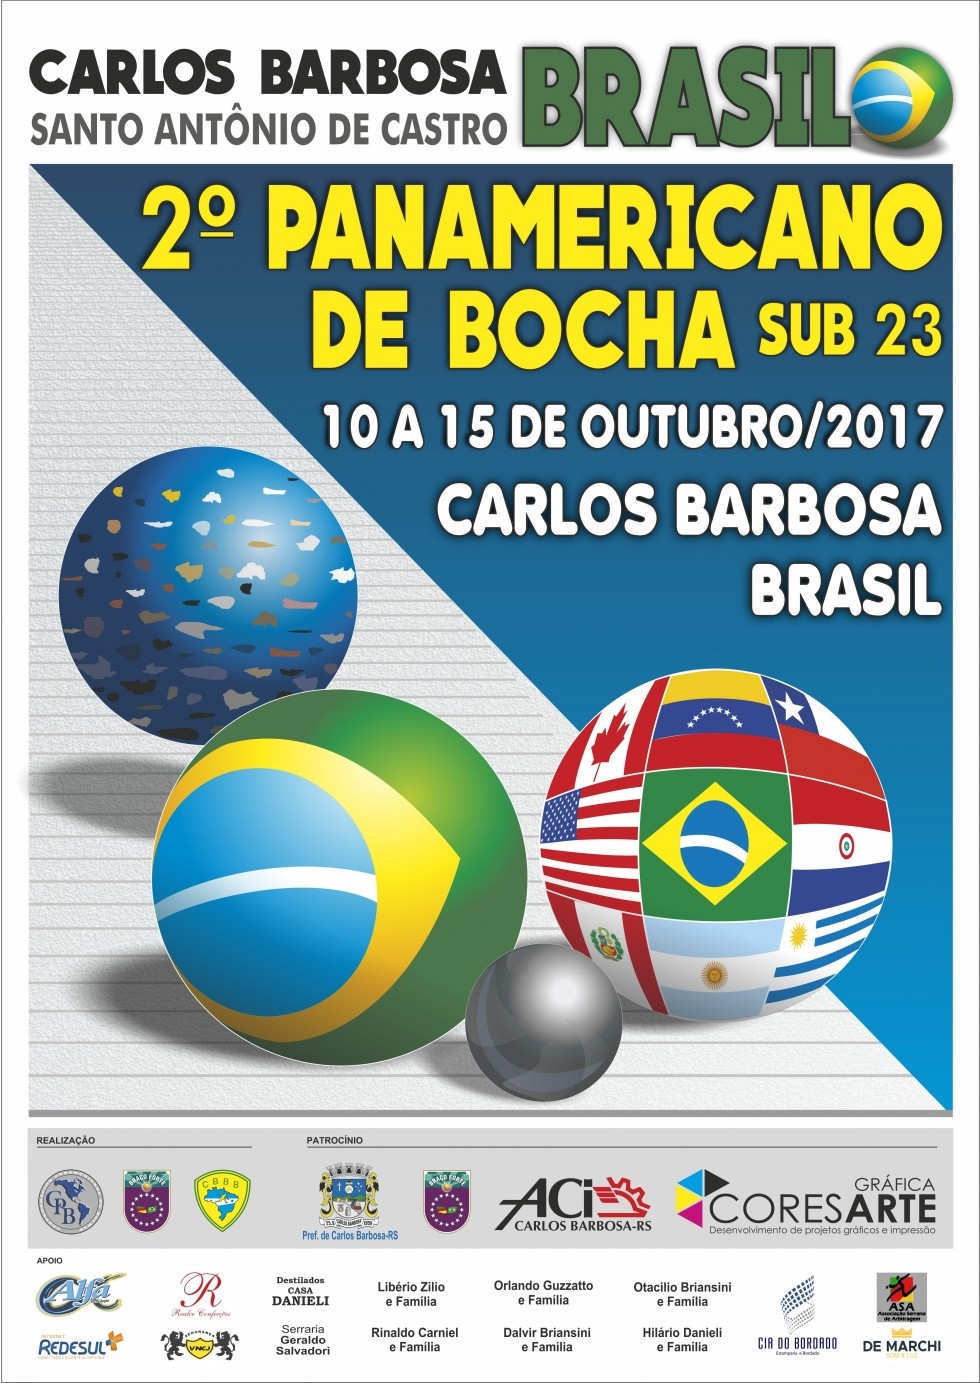 Seguem os preparativos para o Panamericano de Bochas em Carlos Barbosa